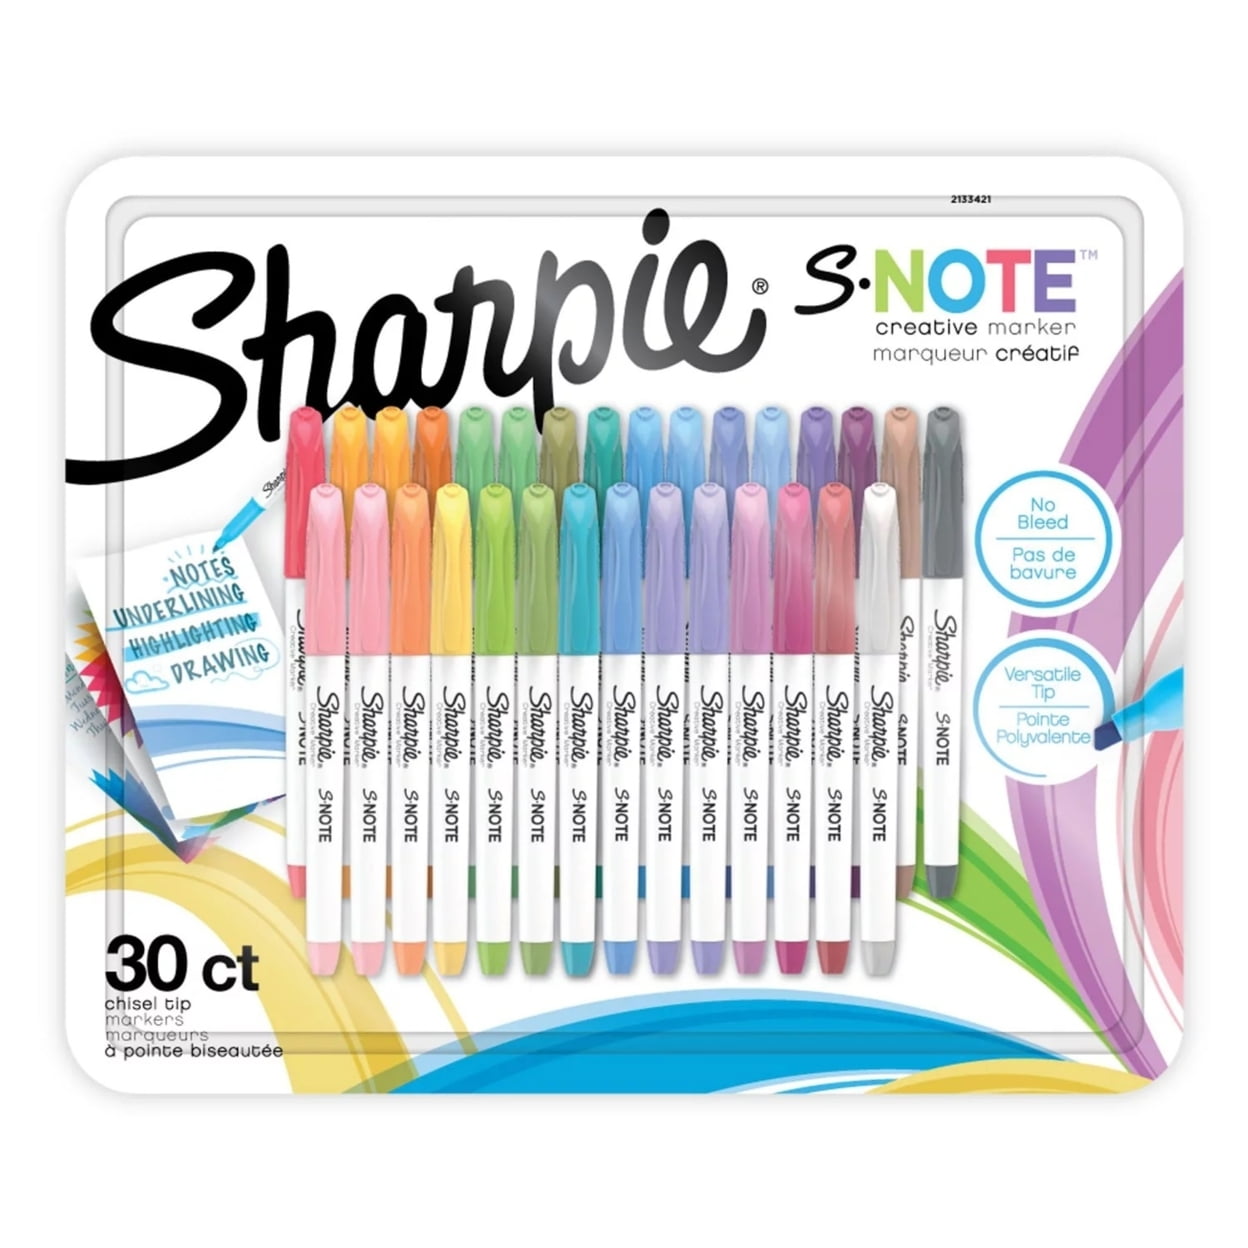 76 Unique Sharpie Colors-Every Color-Short! 